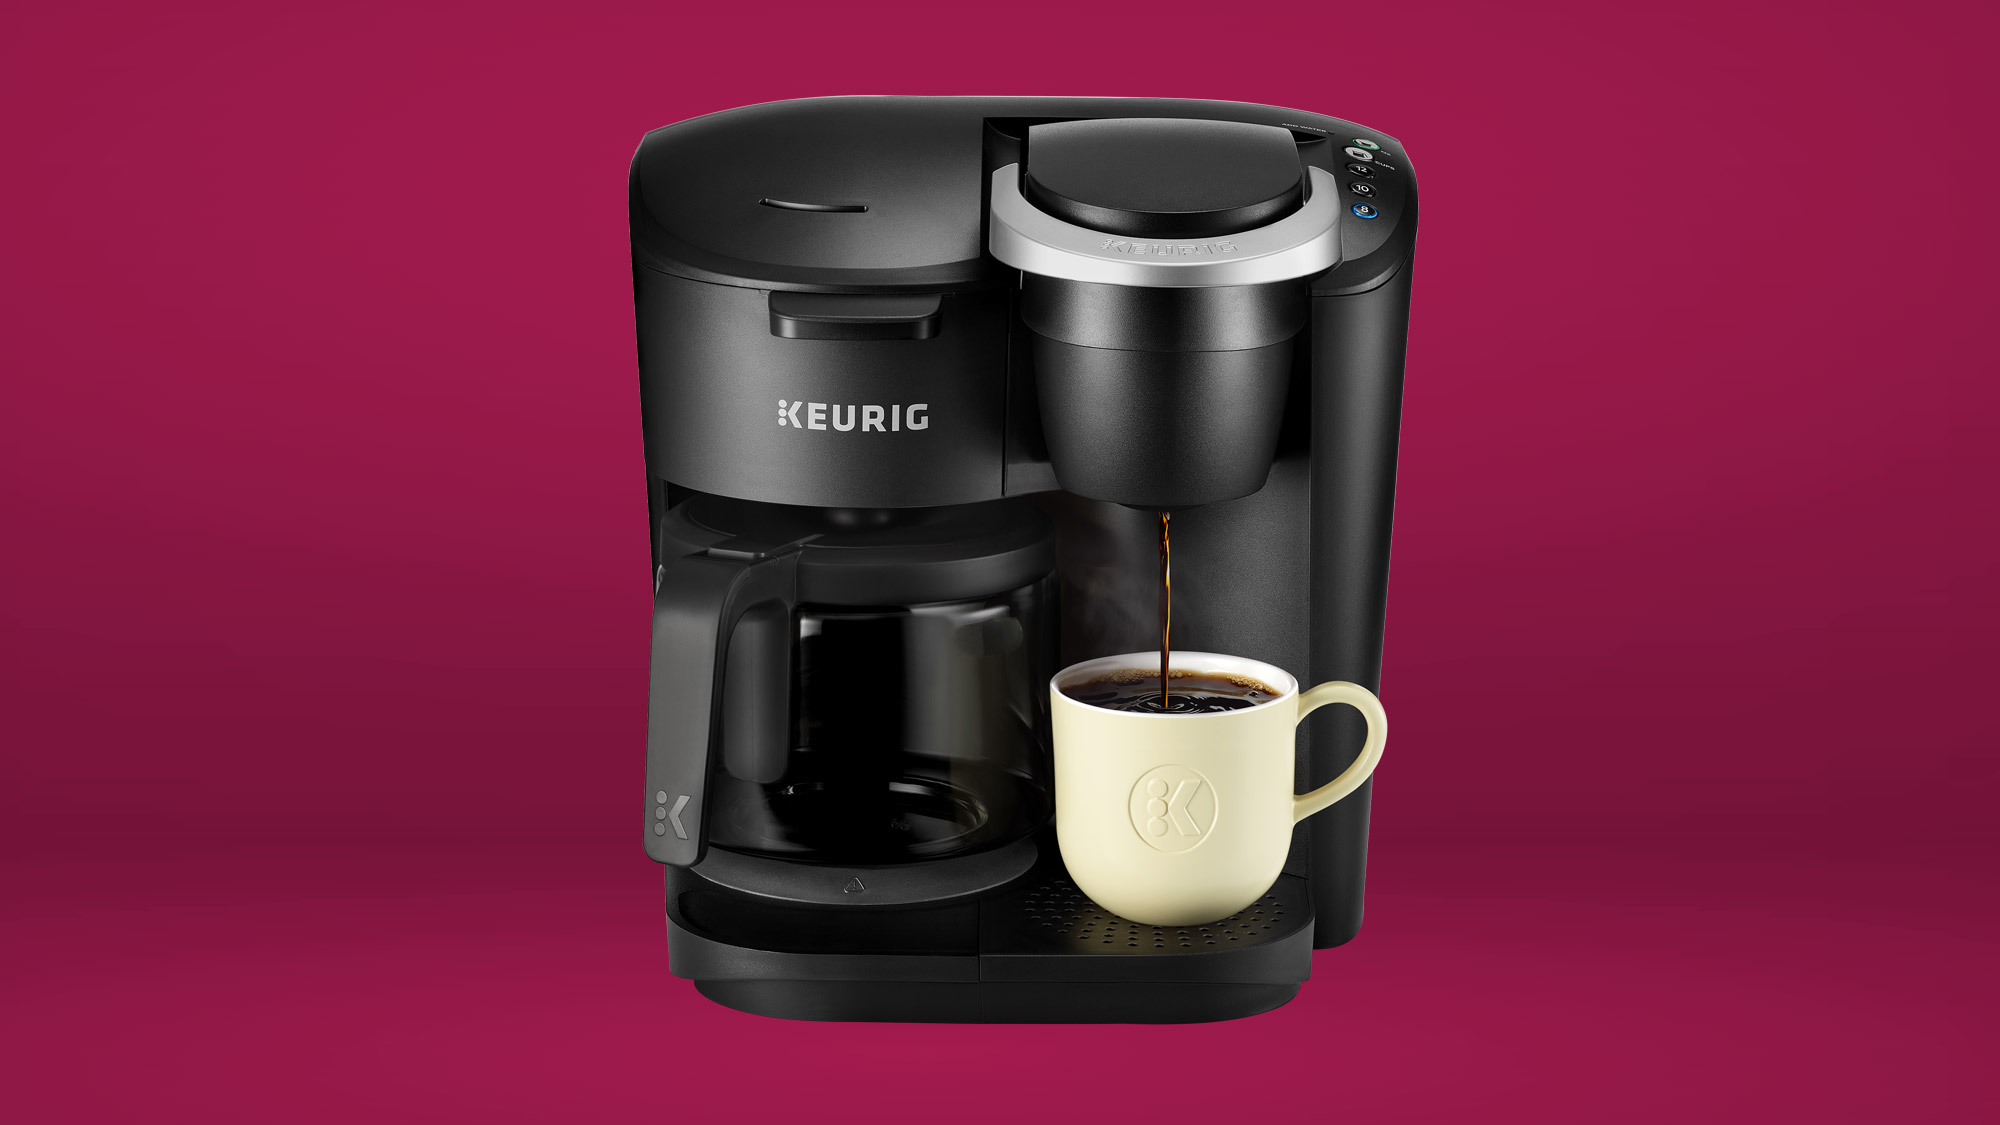 Best Buy has the Keurig K-Duo coffee maker for under $150